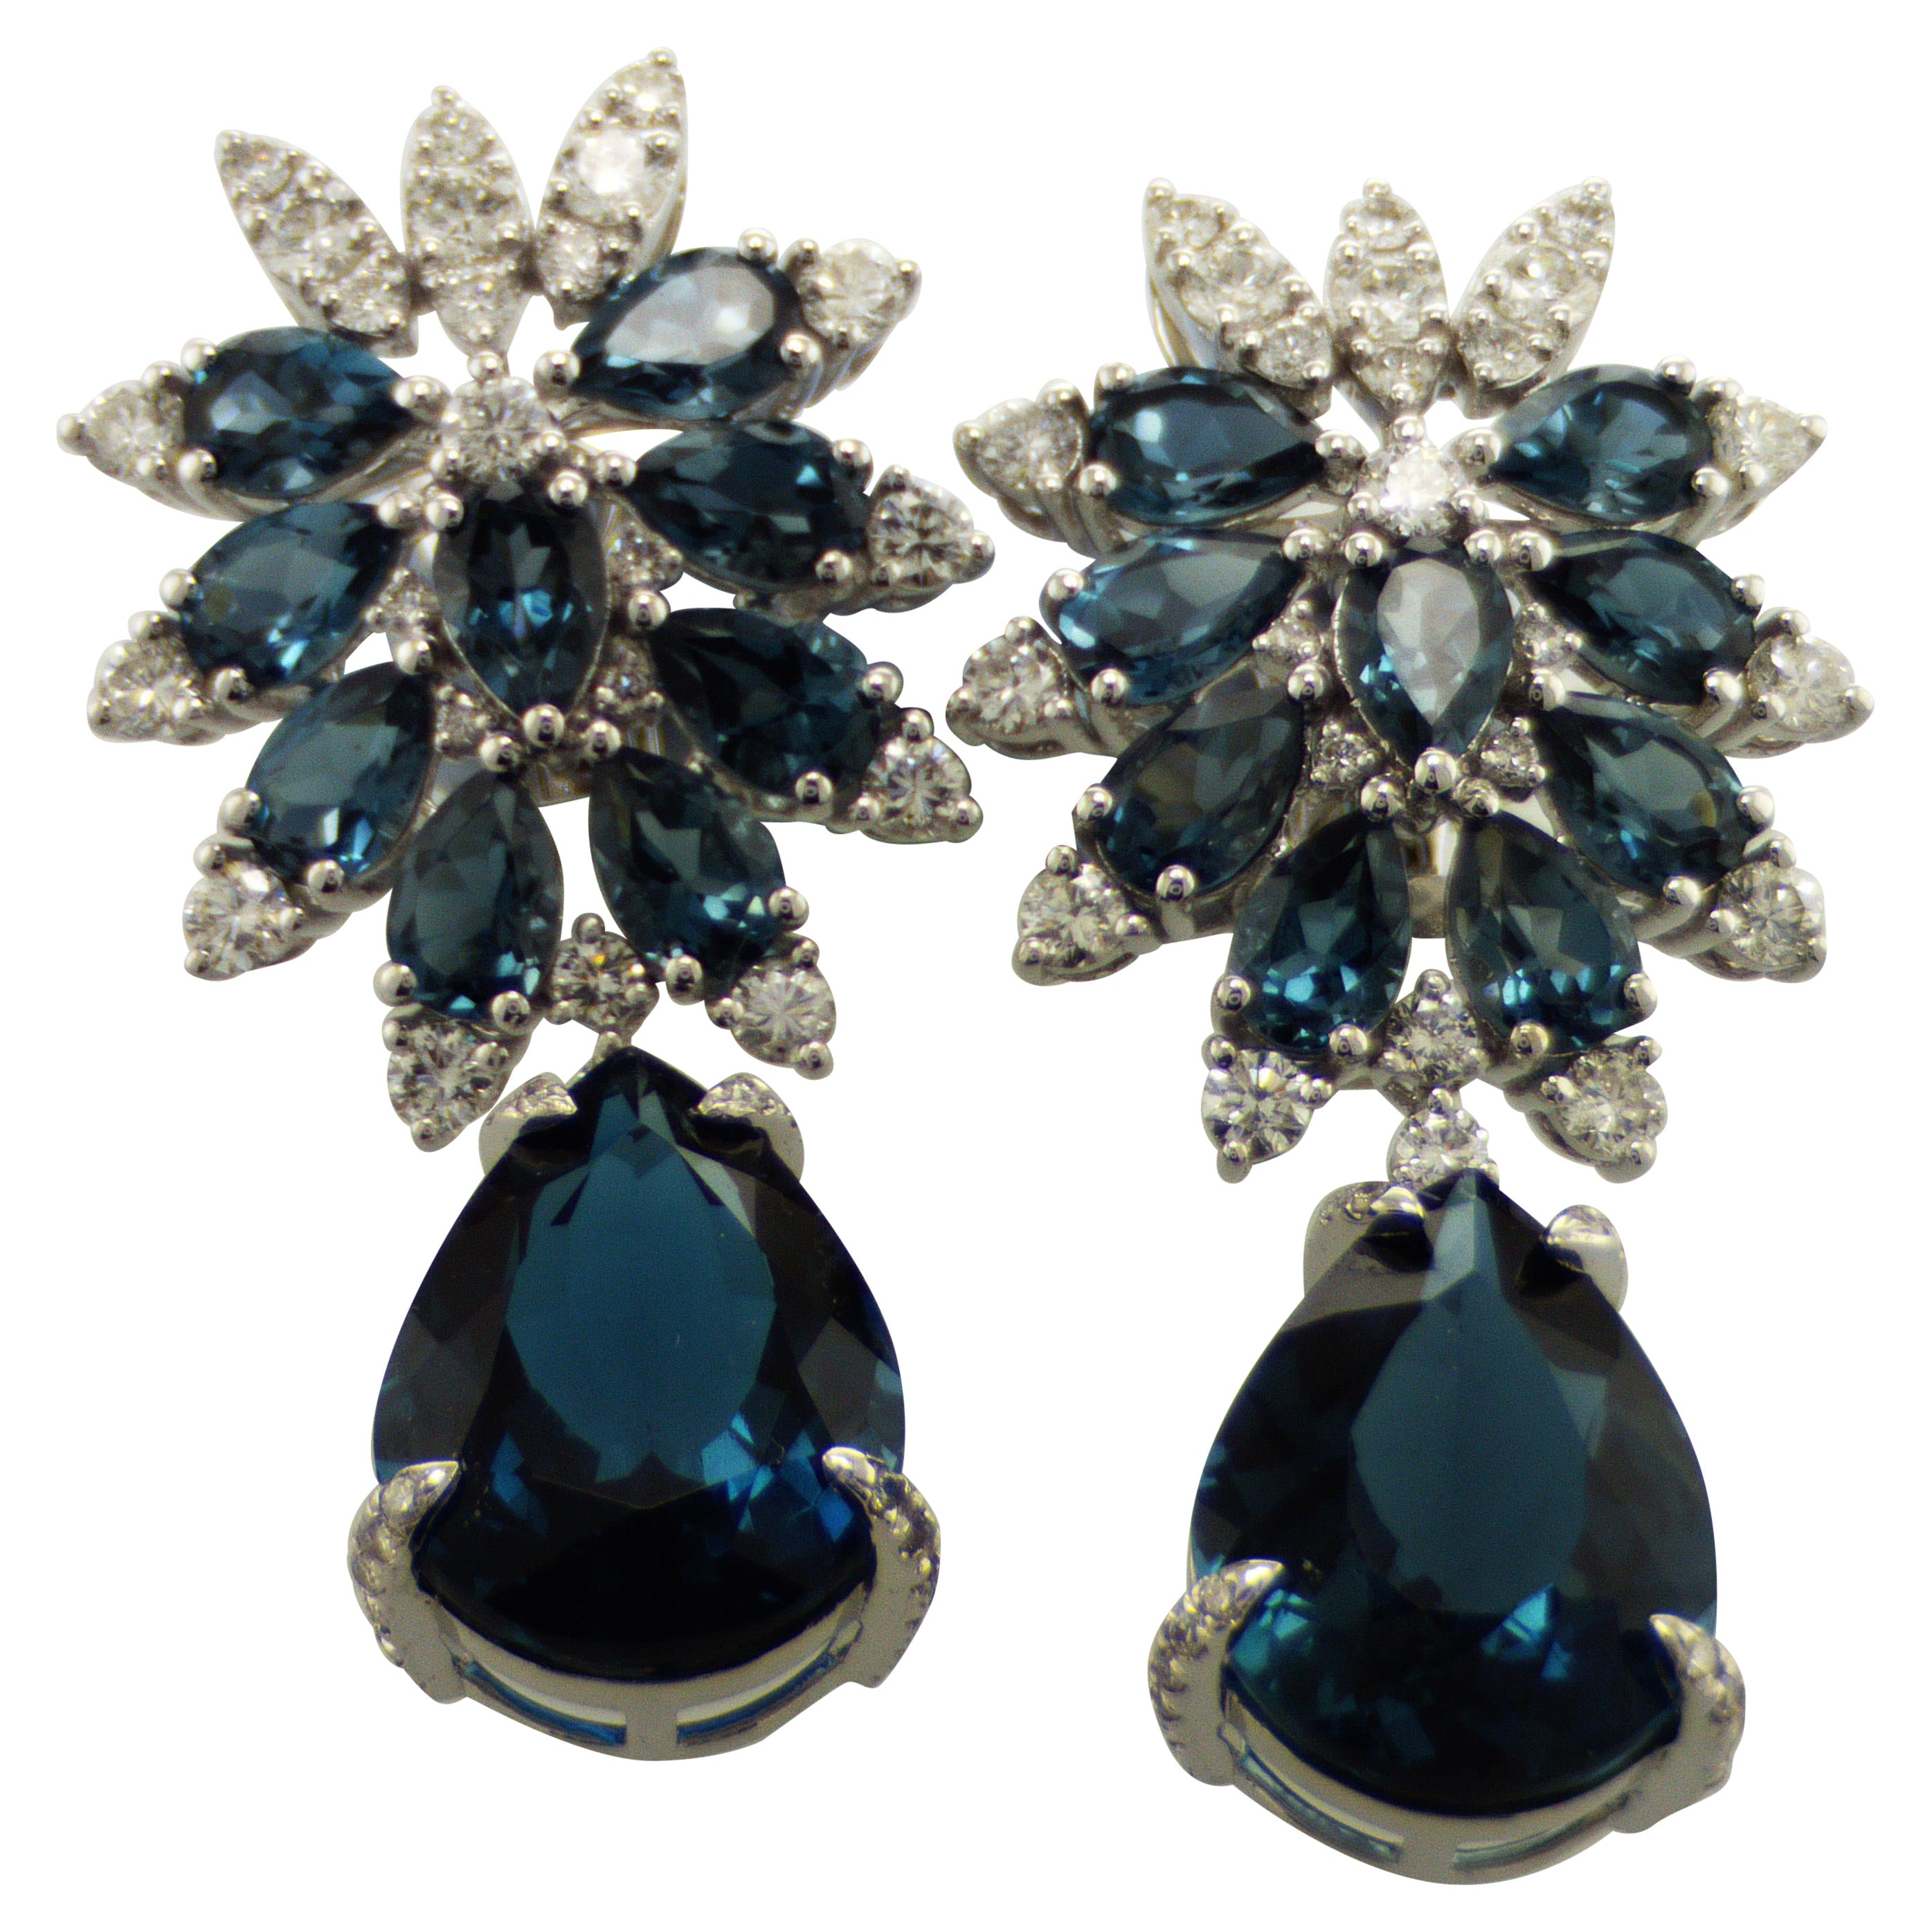 IDL certified London Blue Topaz Diamond Earrings